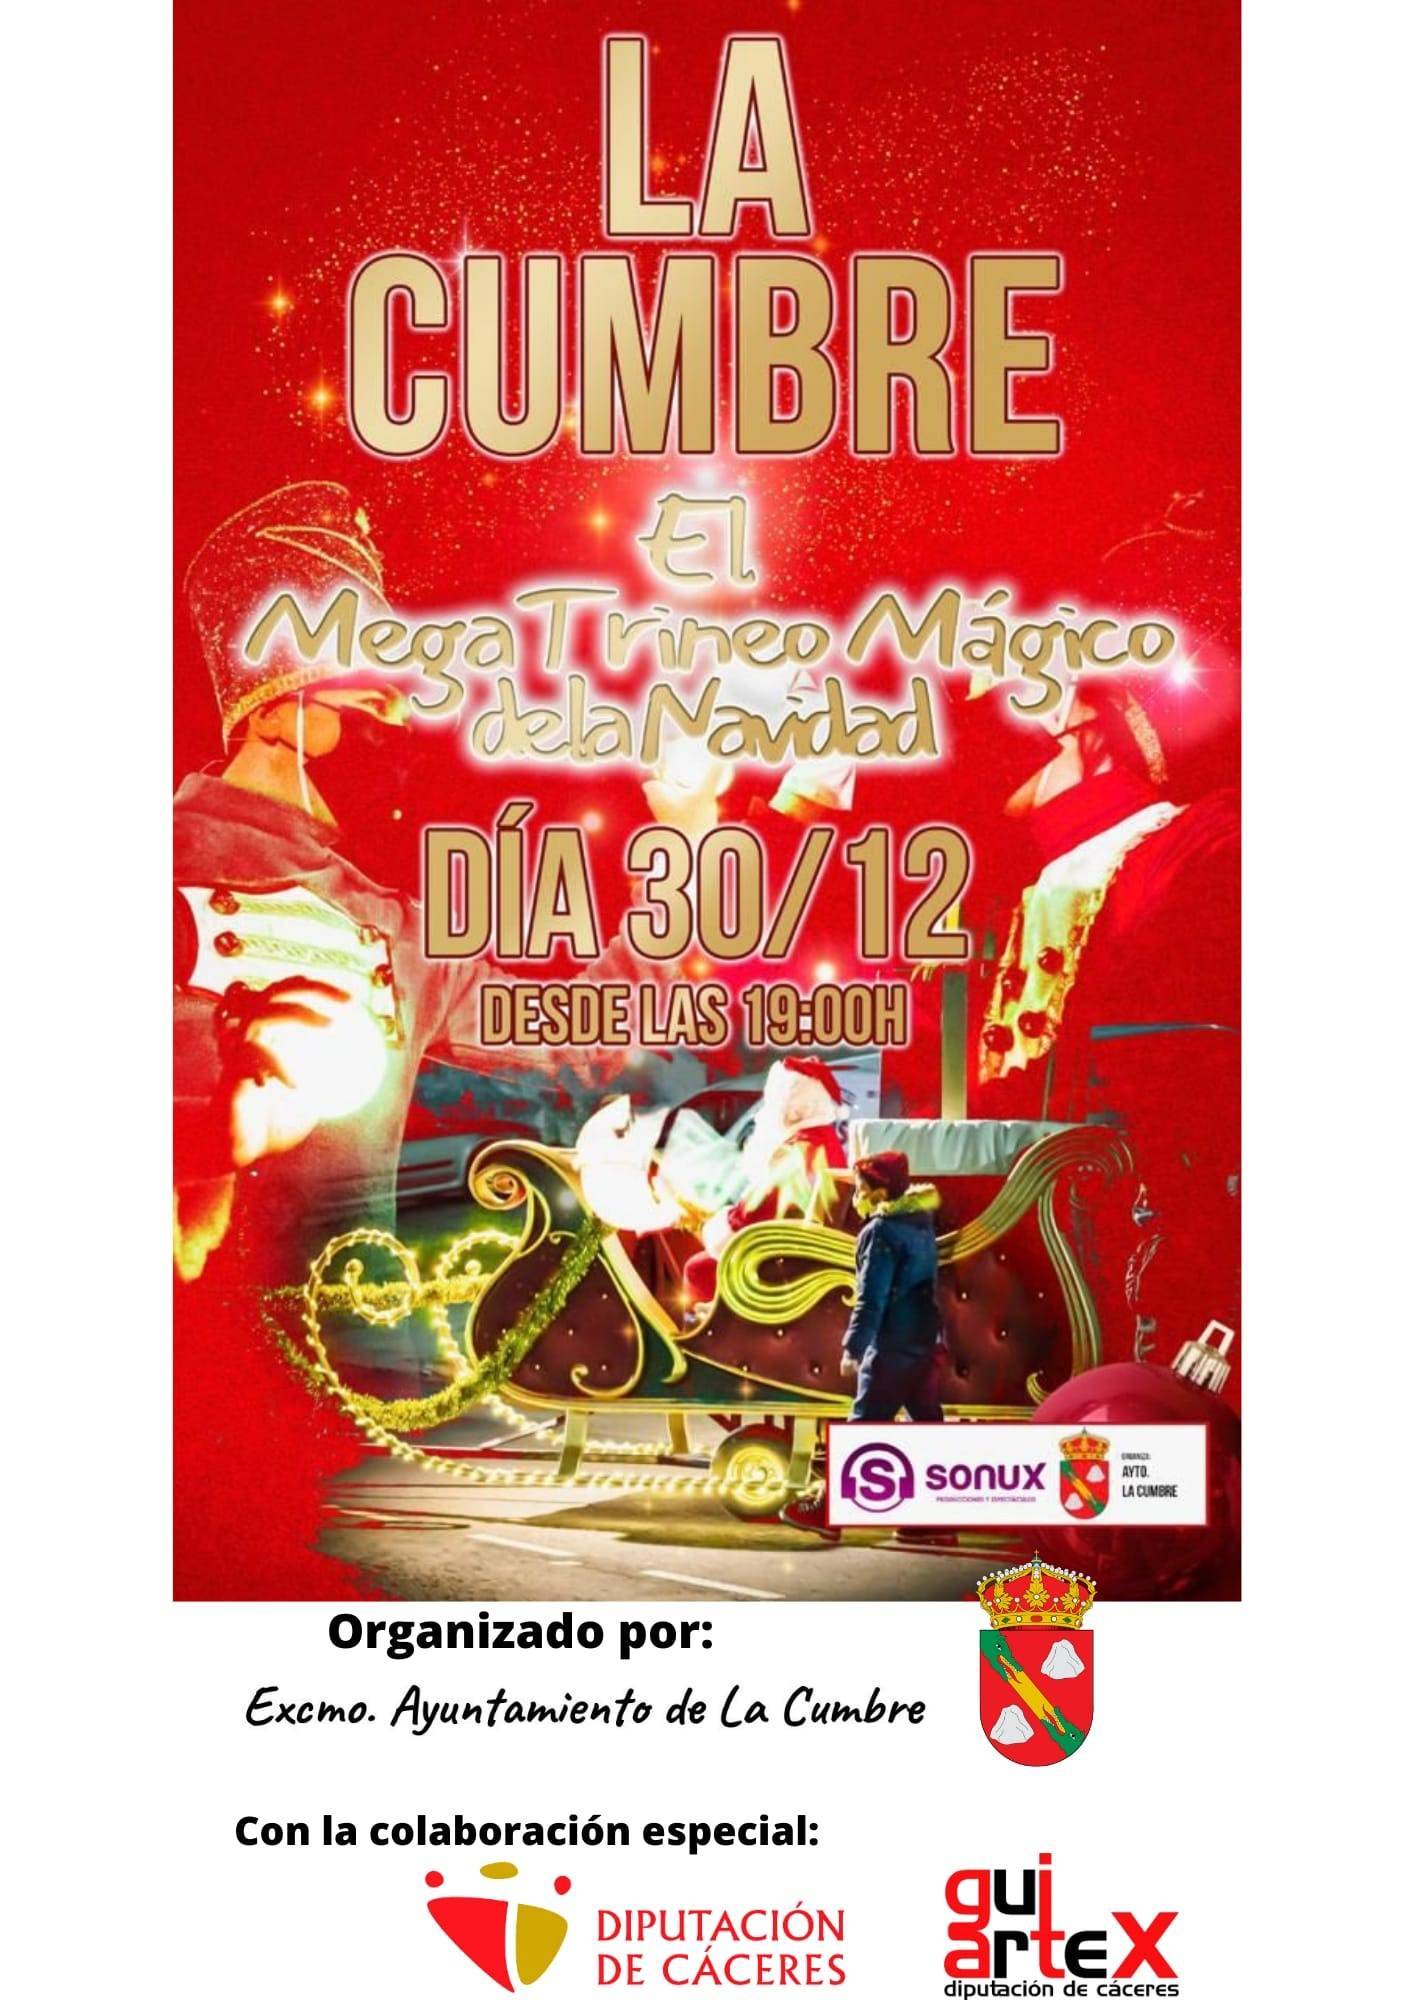 El mega trineo mágico de la Navidad (2021) - La Cumbre (Cáceres)